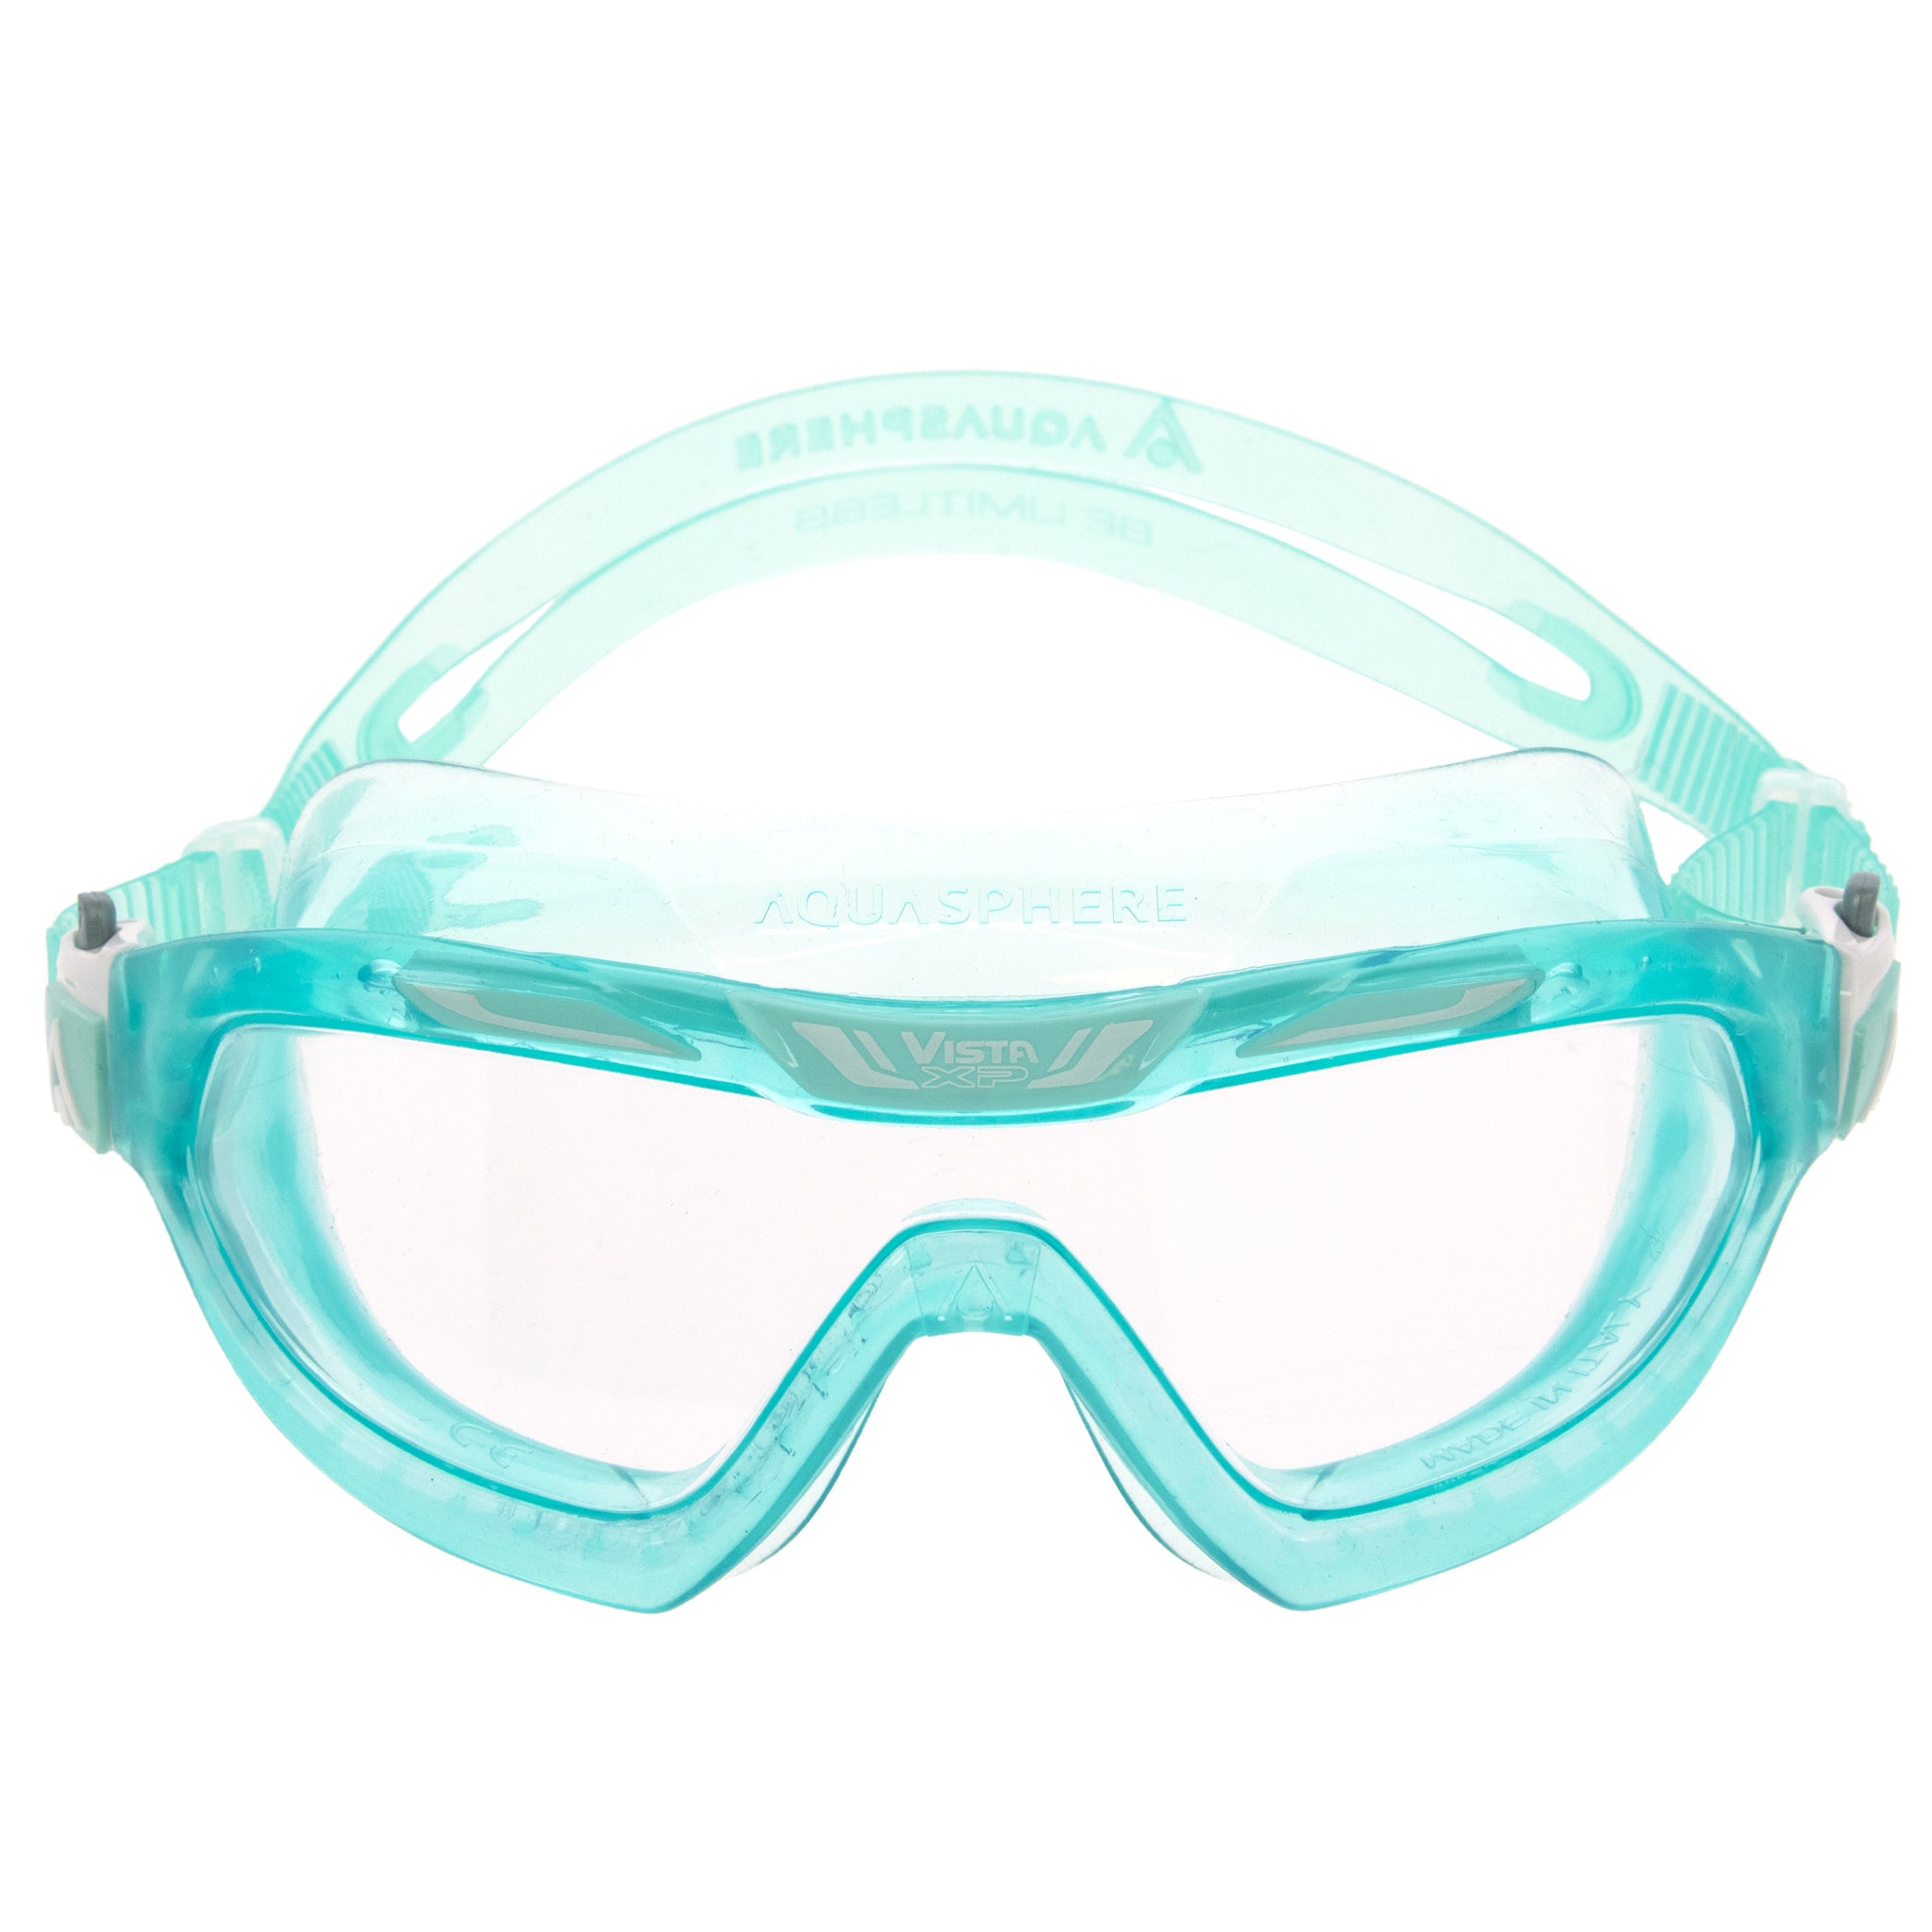 Aquasphere Vista XP Swimming Goggles Mask Clear Lens